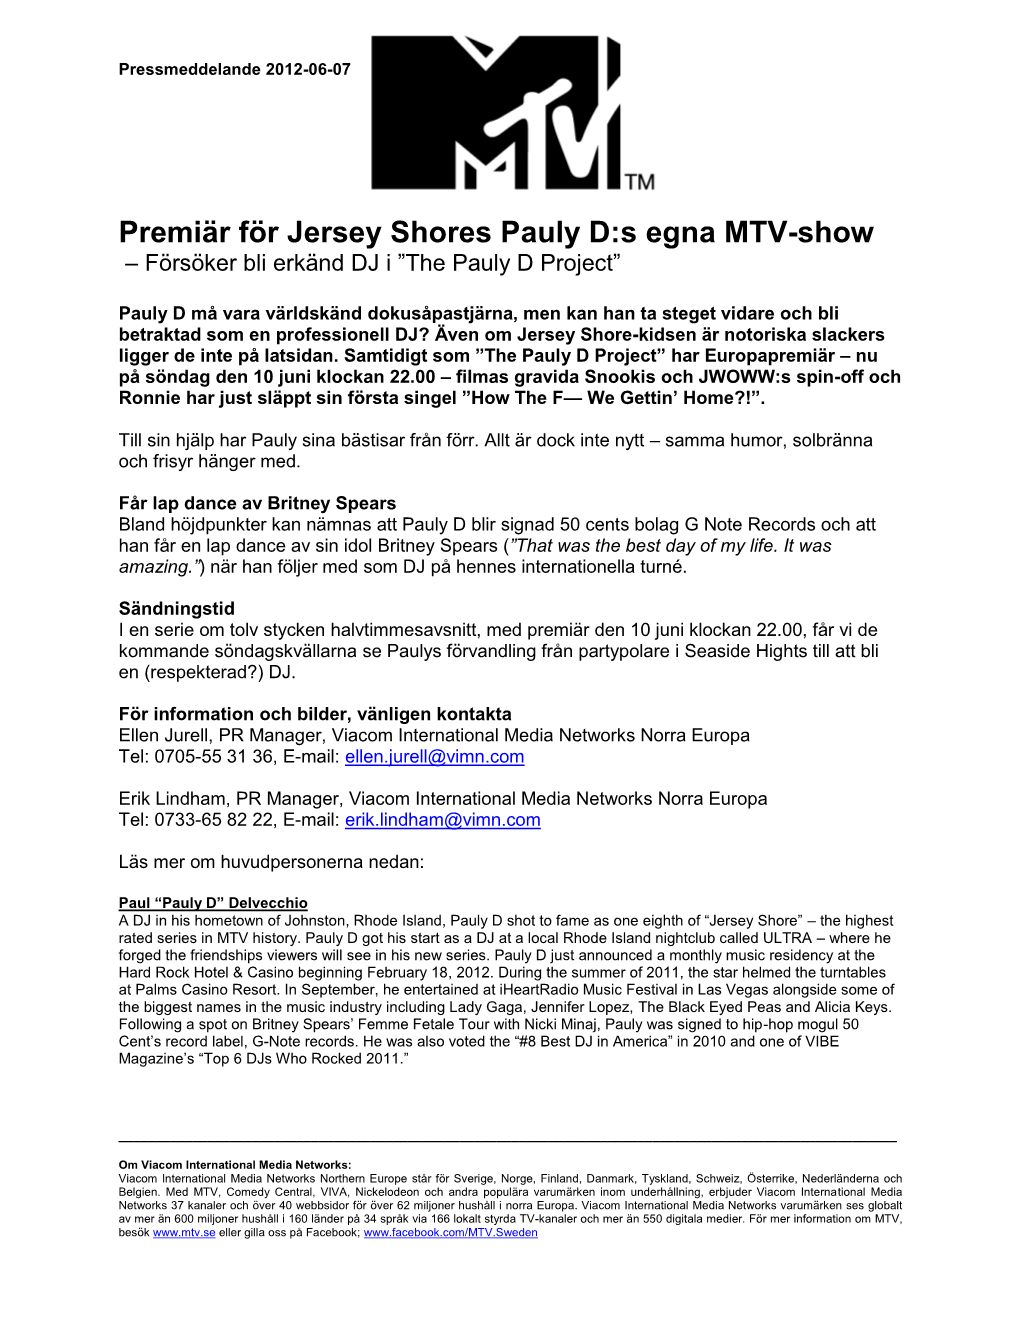 Premiär För Jersey Shores Pauly D:S Egna MTV-Show – Försöker Bli Erkänd DJ I ”The Pauly D Project”